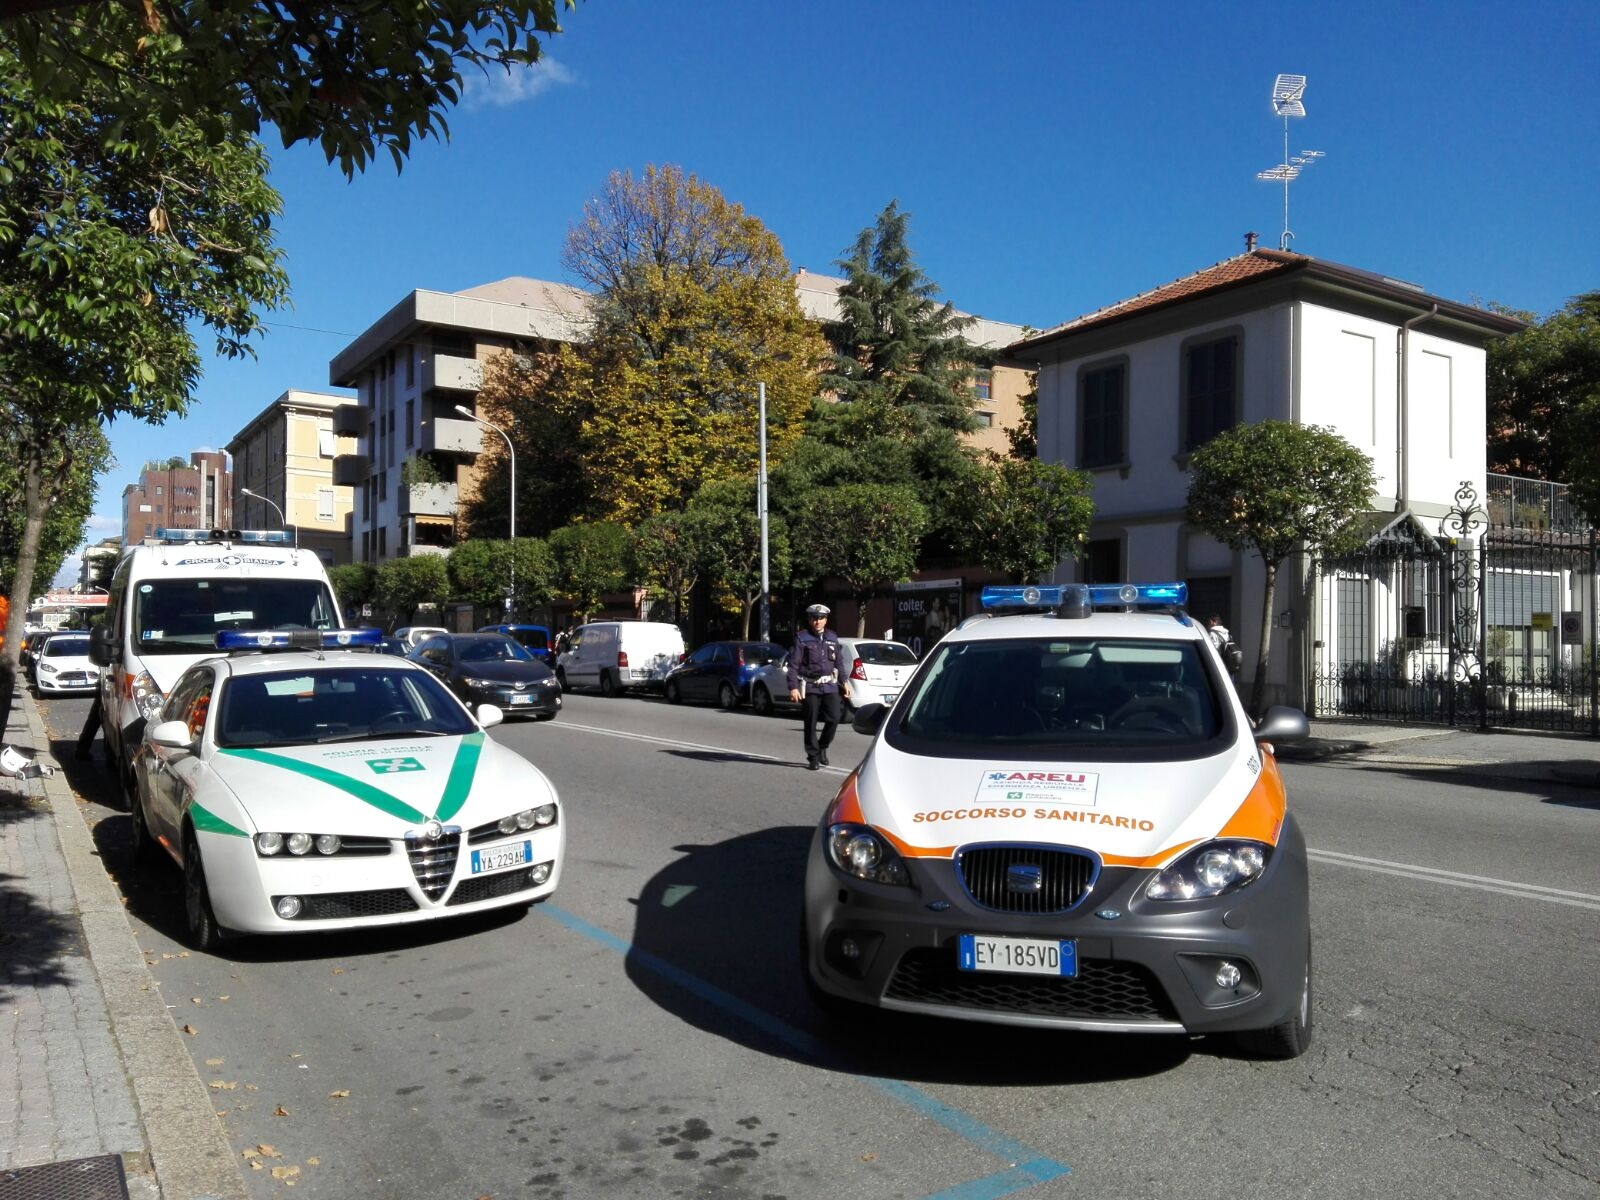 Inversione azzardata in corso Milano, 24enne al Pronto soccorso